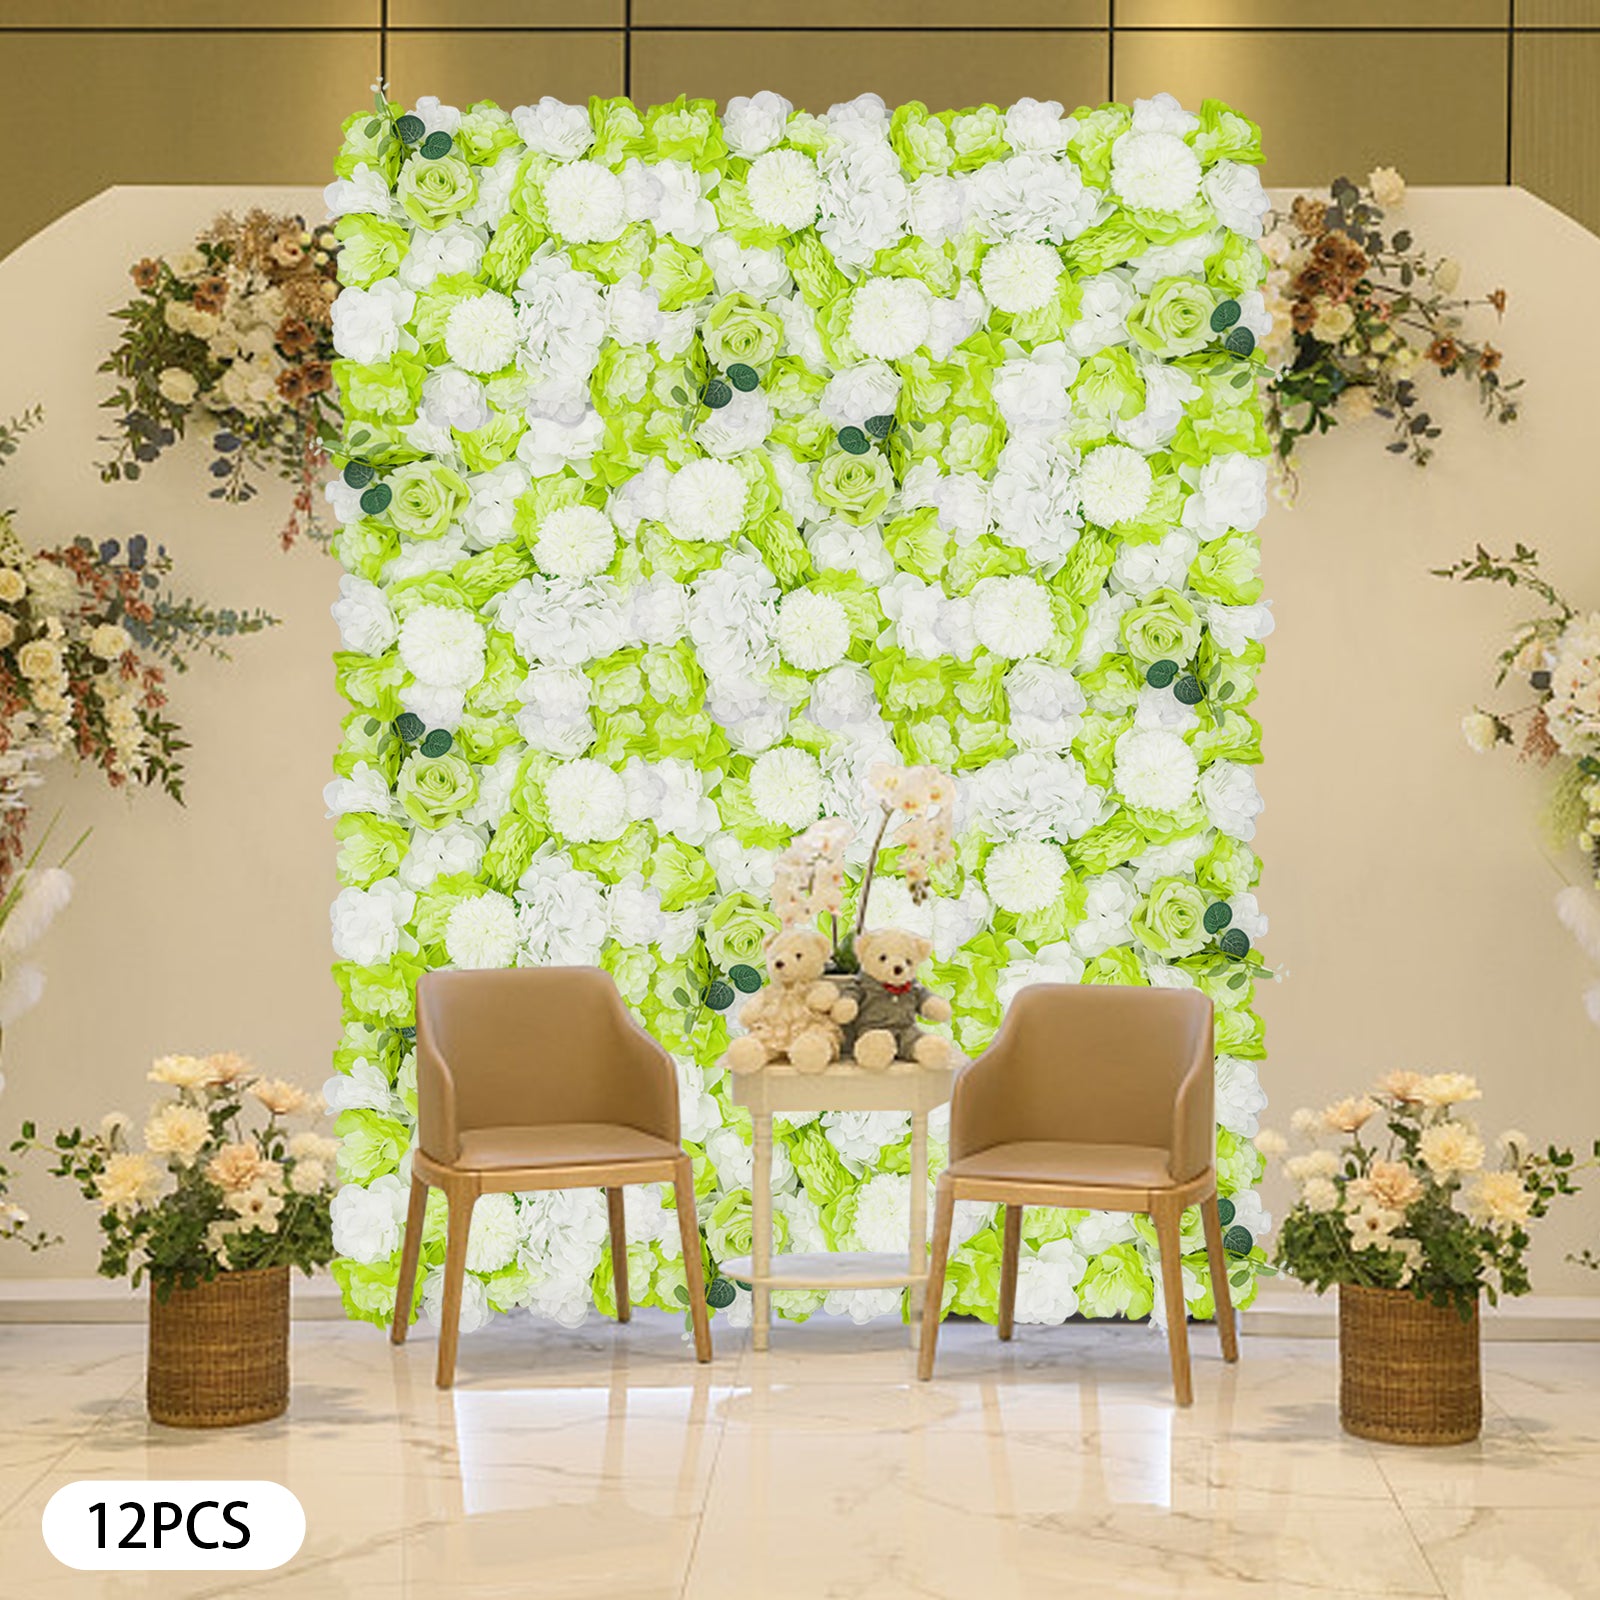 CNCEST 3D Blume Wandtafel, künstliche Blumen Wand Hintergrund Seide Rose Matte für Home Party Hochzeit Hintergrund Wanddekoration